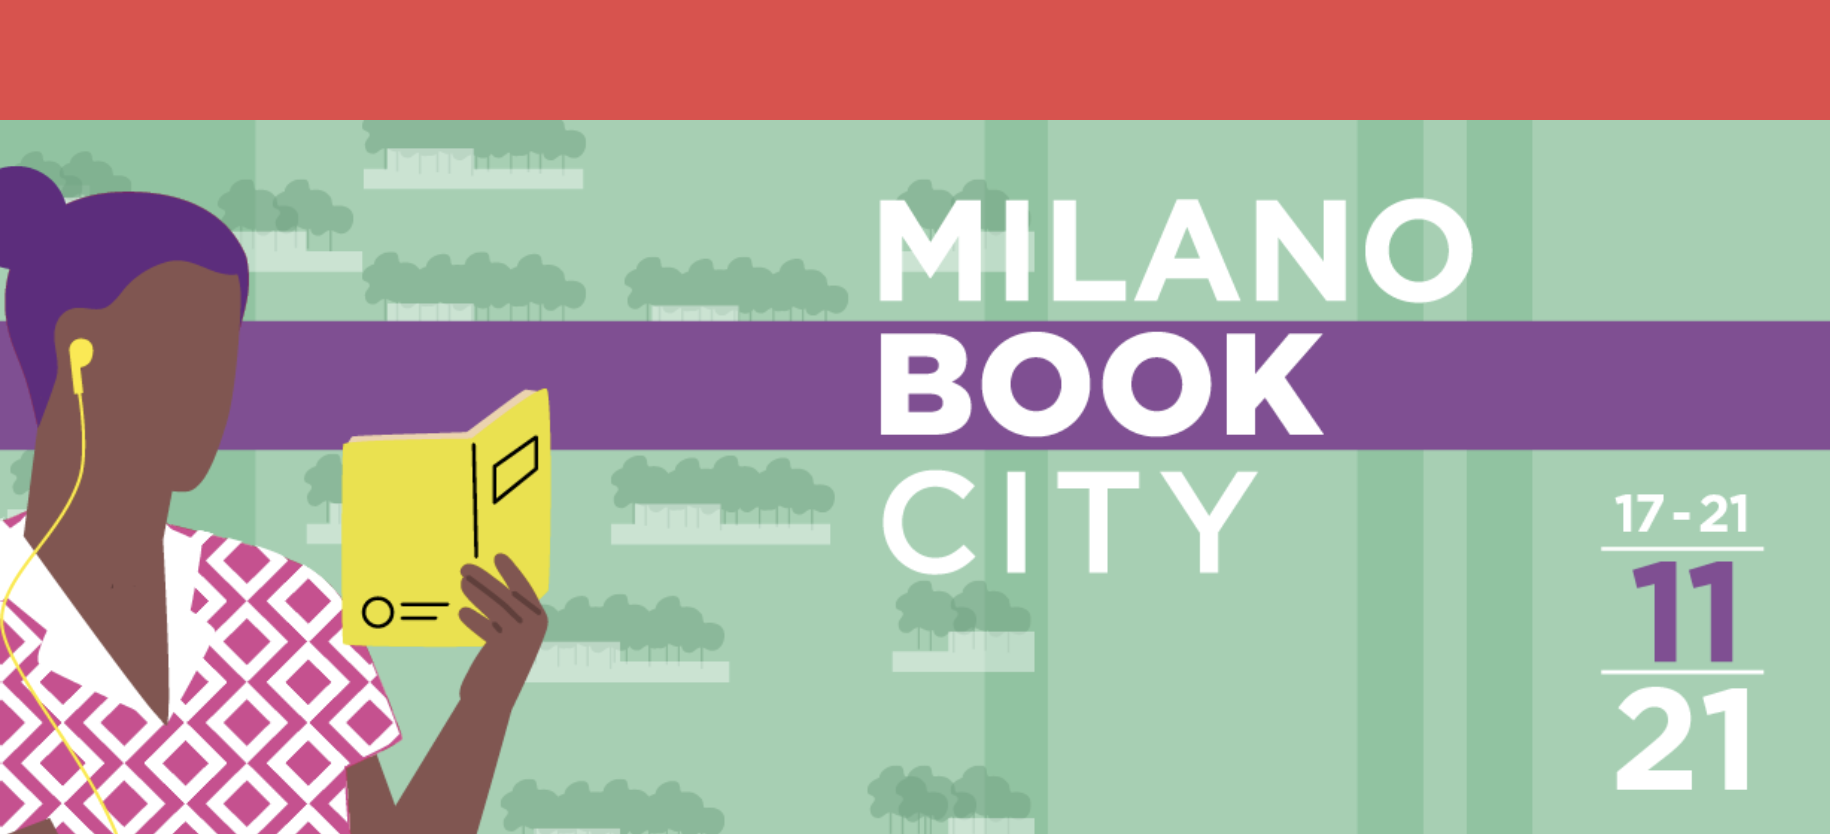 Torna Milano BookCity: il libro come elemento identitario della città